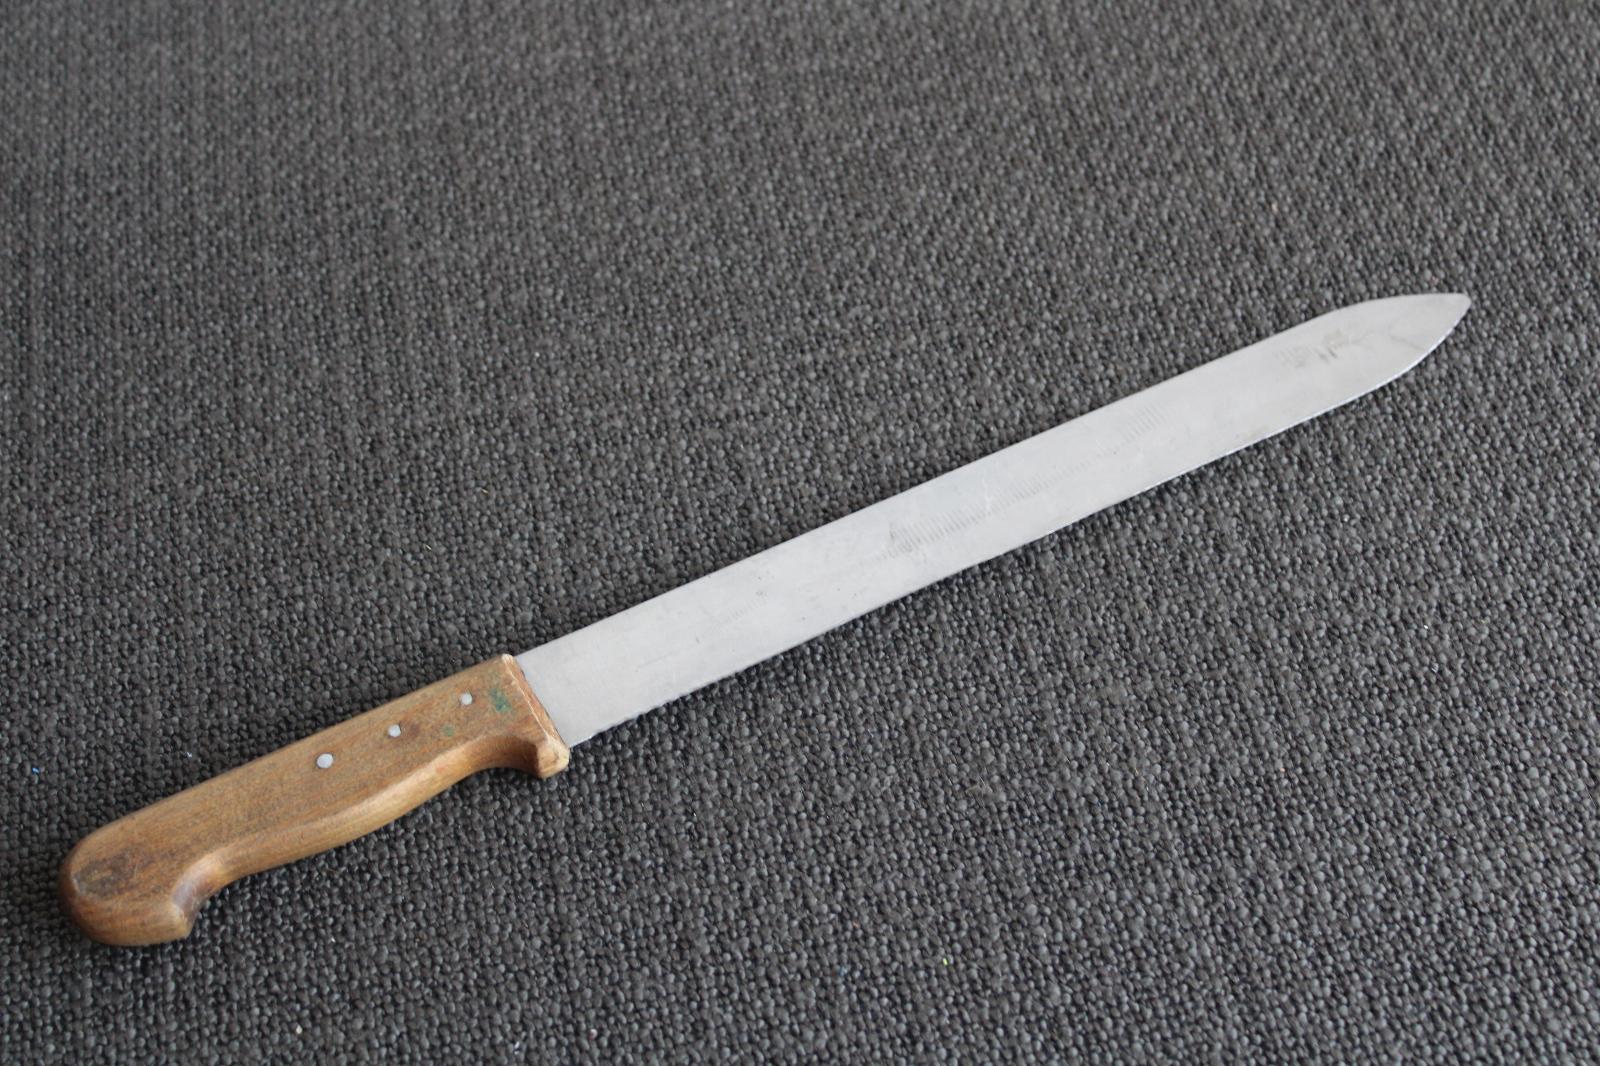 D. Kuchyňský nůž 43 cm stará ocel  - Vybavení do kuchyně